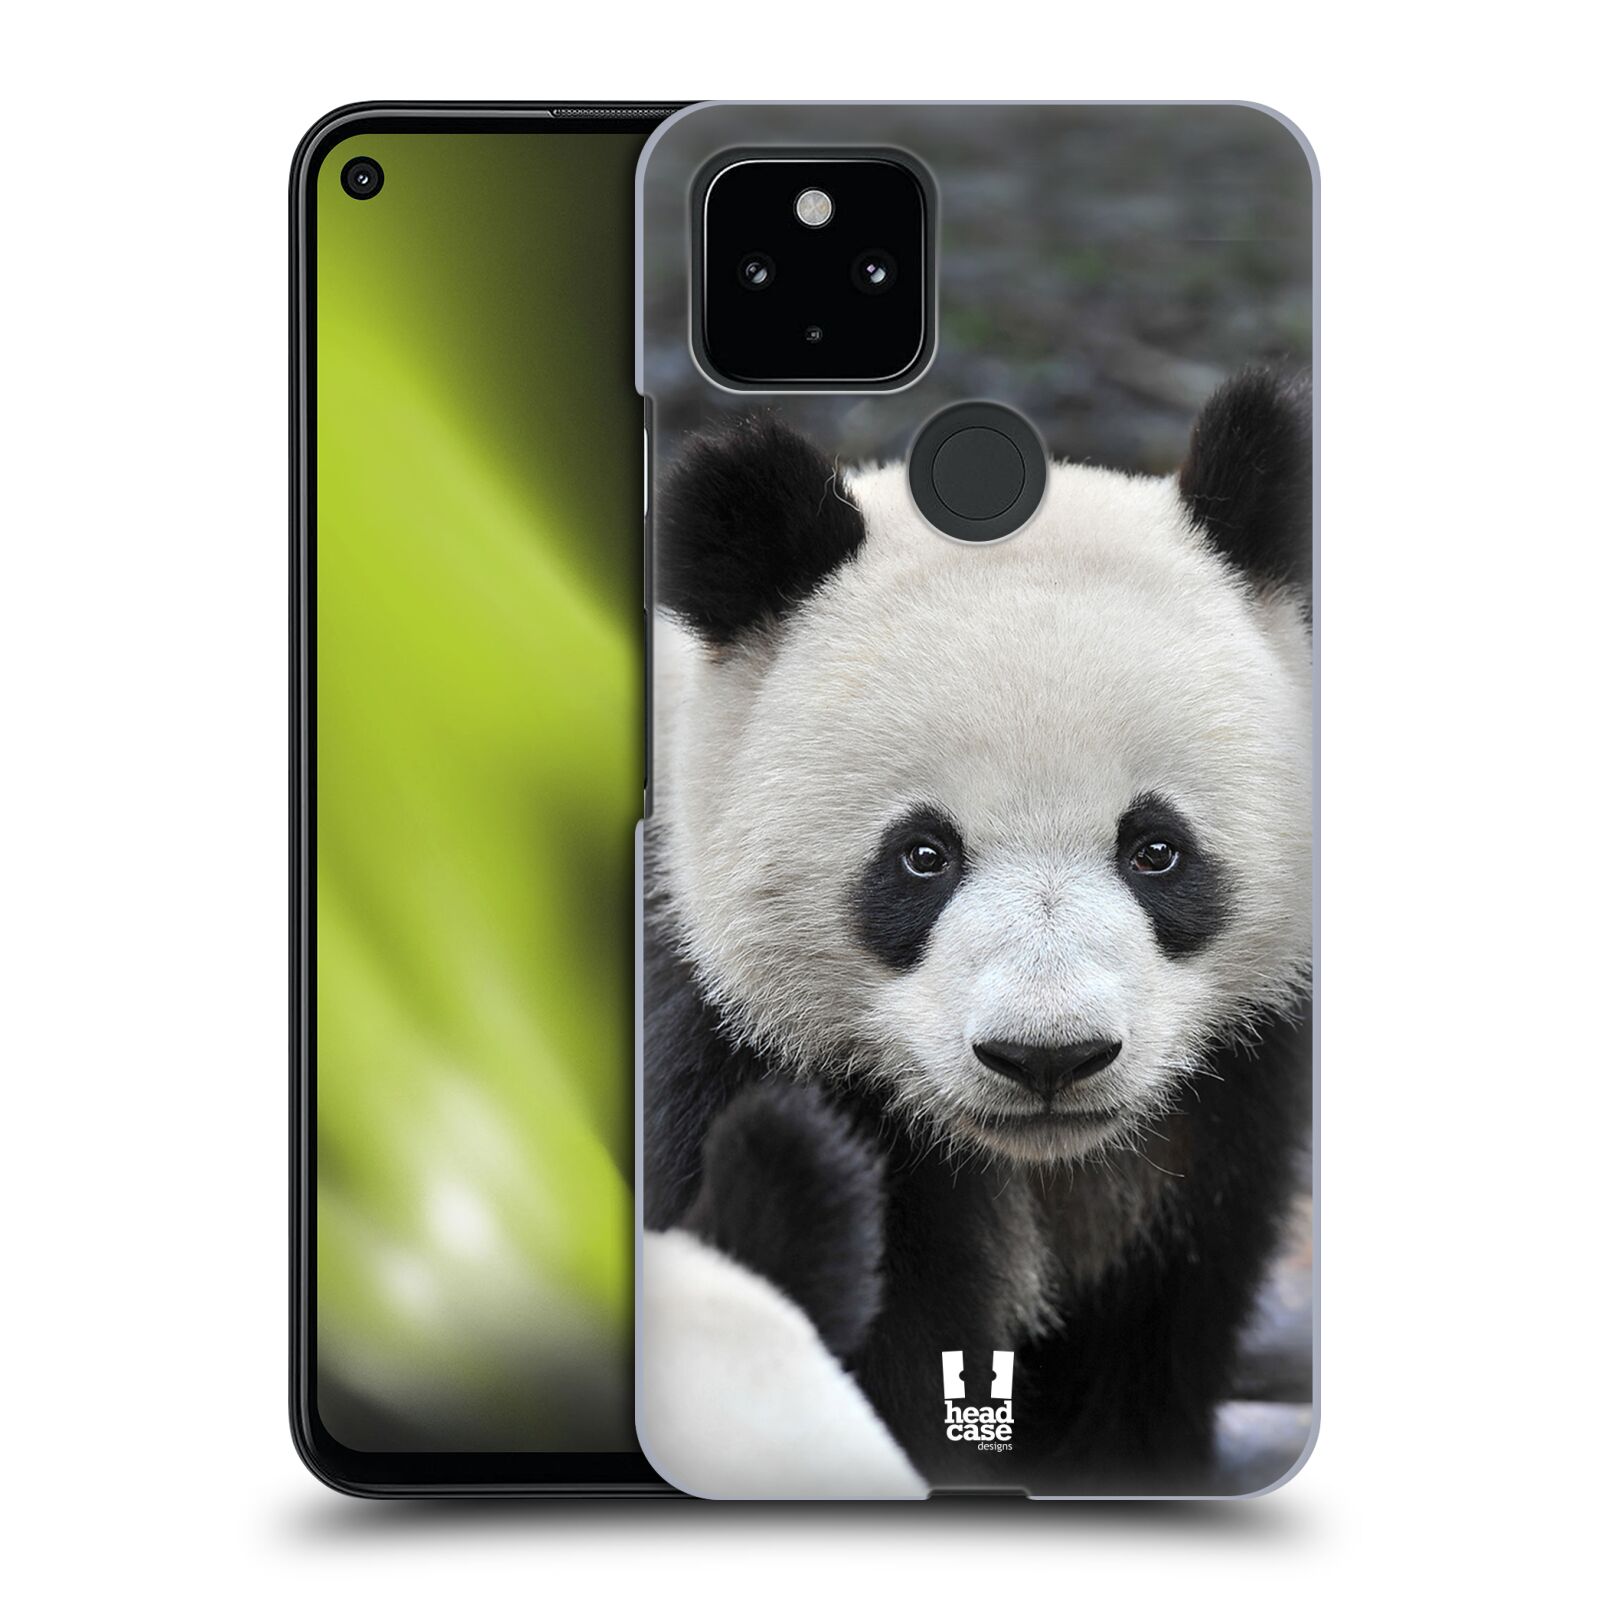 Zadní obal pro mobil Google Pixel 4a 5G - HEAD CASE - Svět zvířat medvěd panda